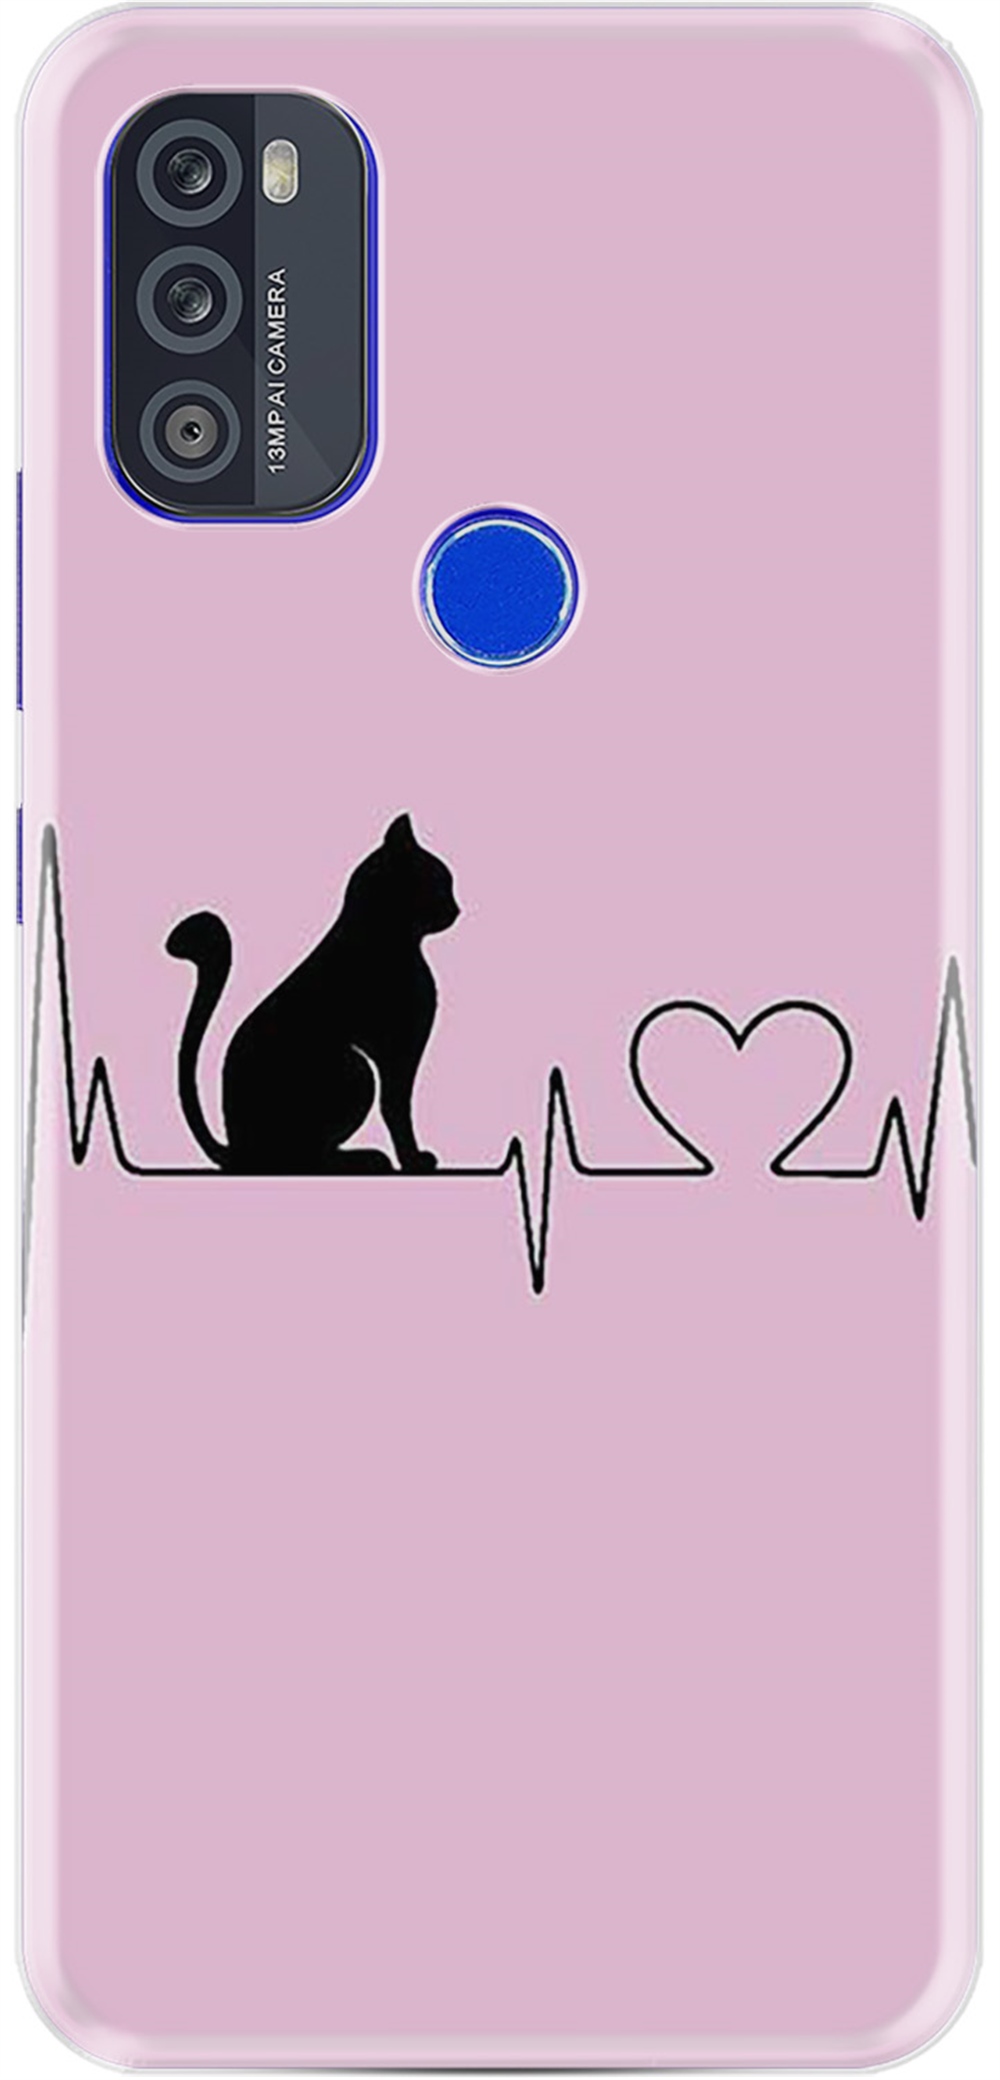 Reeder P13 Blue Max Pro 256GB Kılıfları Desenli Baskılı Silikon Kılıf Pink  Cat Heart 1303